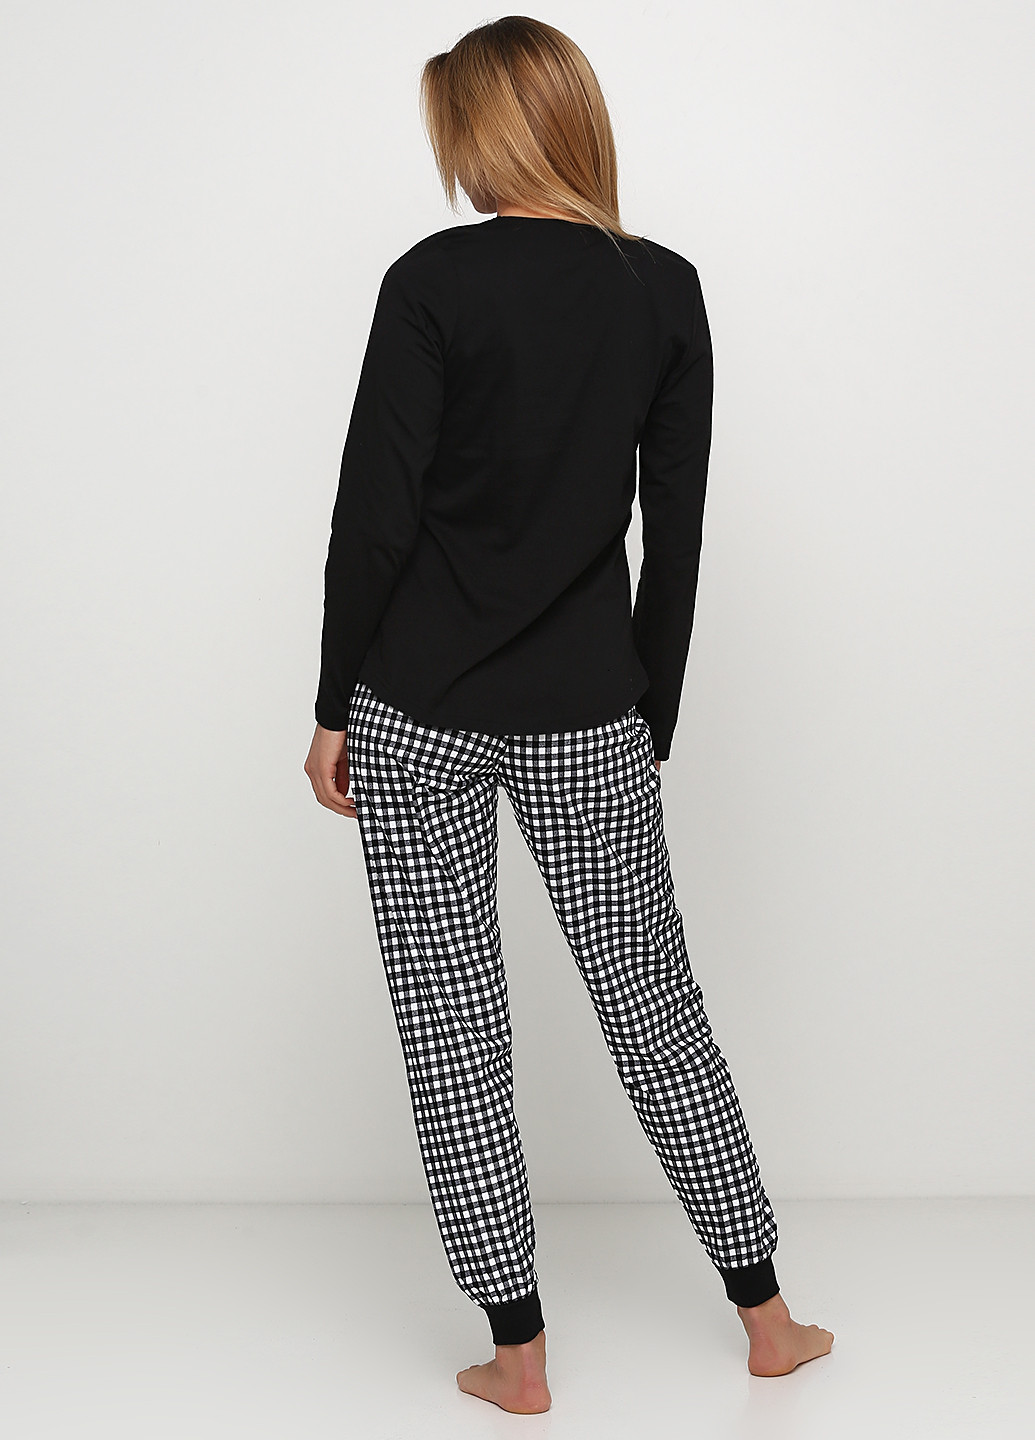 Черная всесезон пижама (лонгслив, брюки) лонгслив + брюки Vienetta